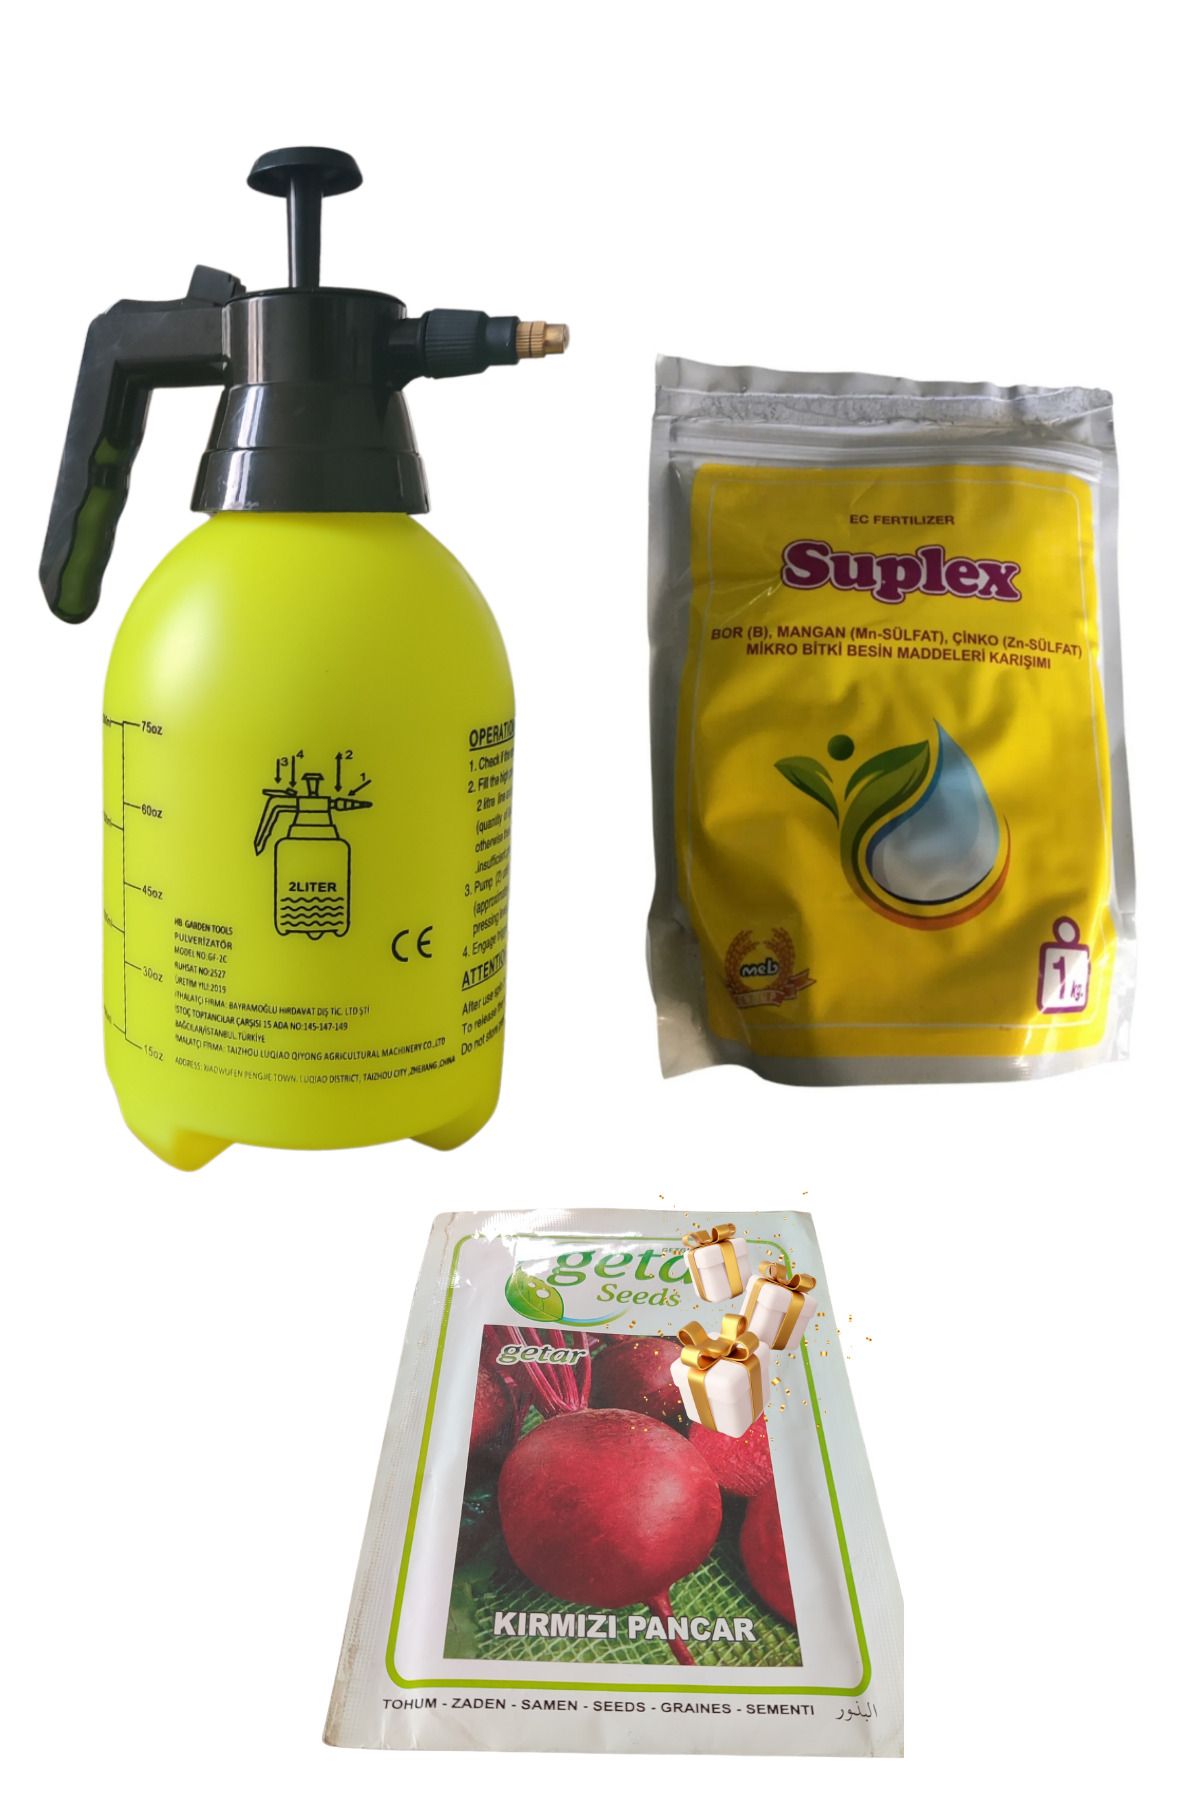 Anka Meb Suplex 1kg / Meyve Tutturcu Aroma Ve Kalite Arttırıcı Gübre/2lt Ilaçlama Pomp/pancar T. Hediye